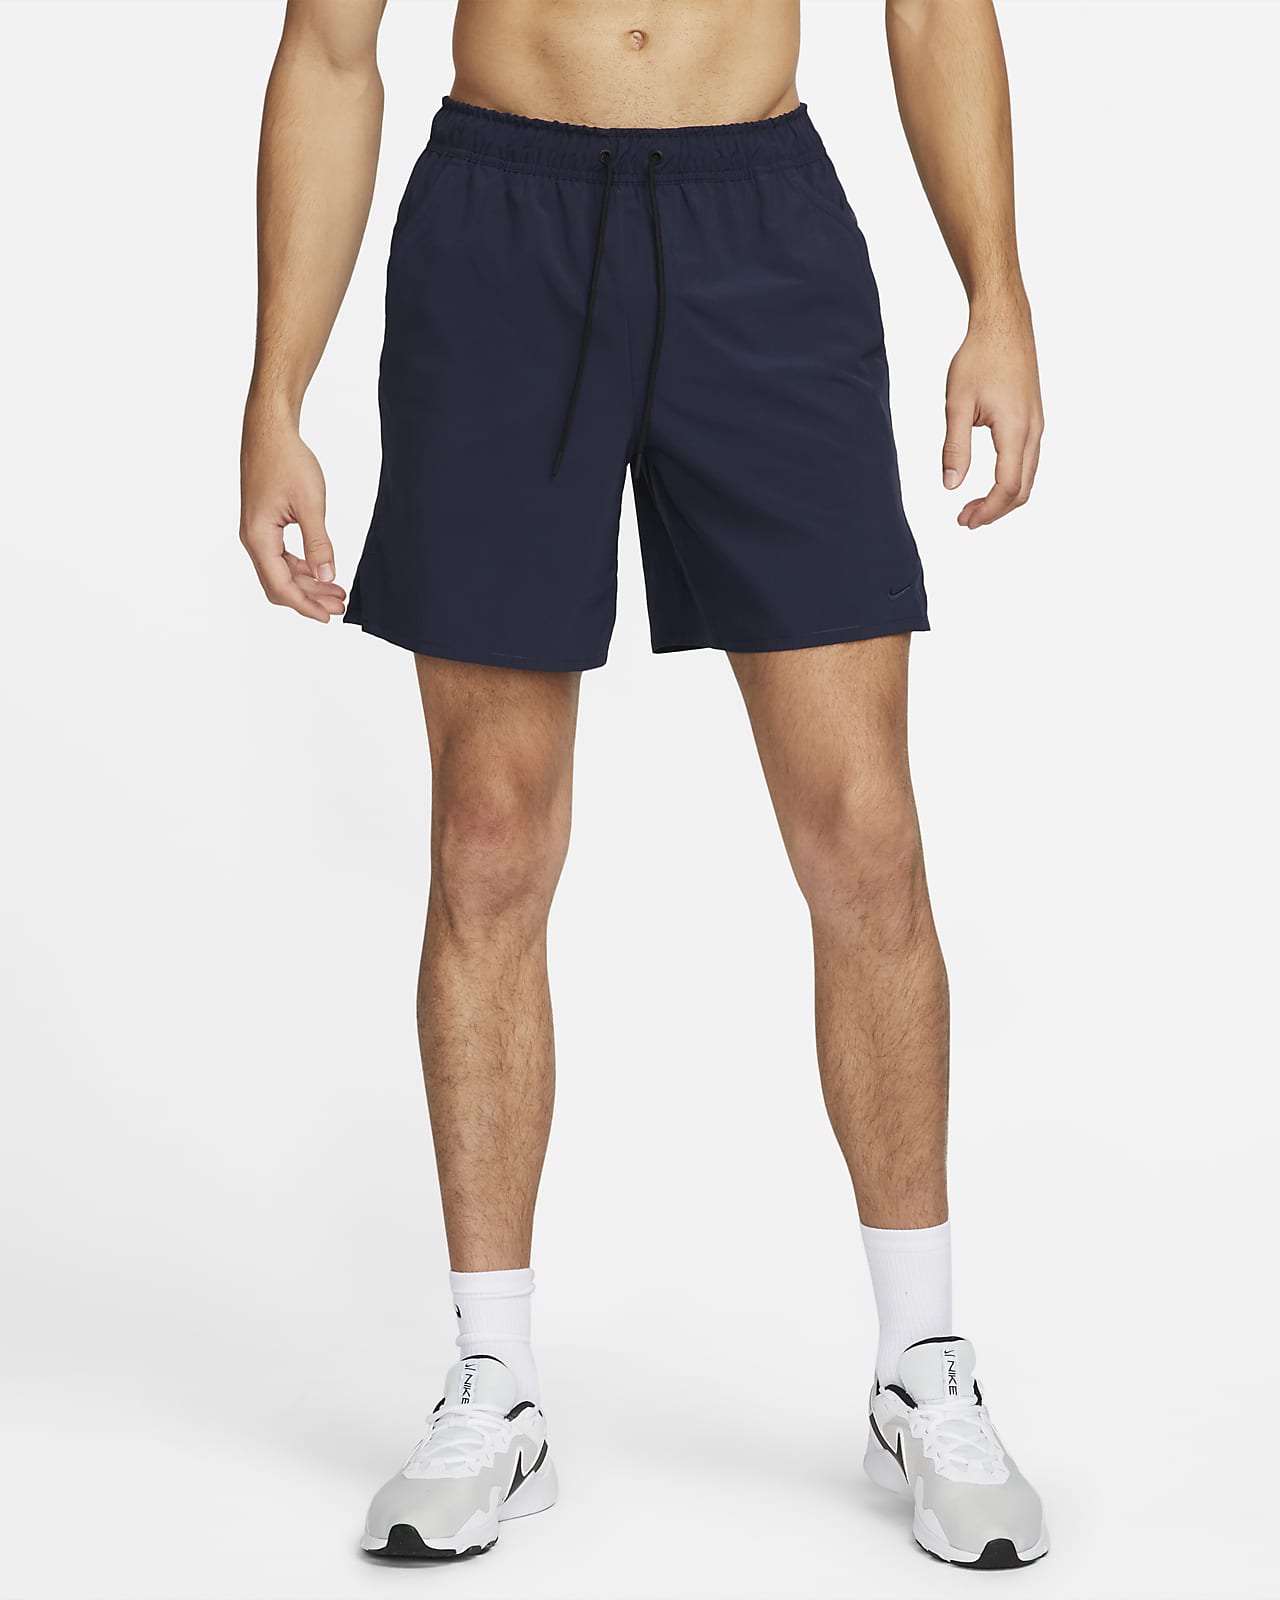 Nike Unlimited Men's Dri-FIT 7" Unlined Versatile Shorts